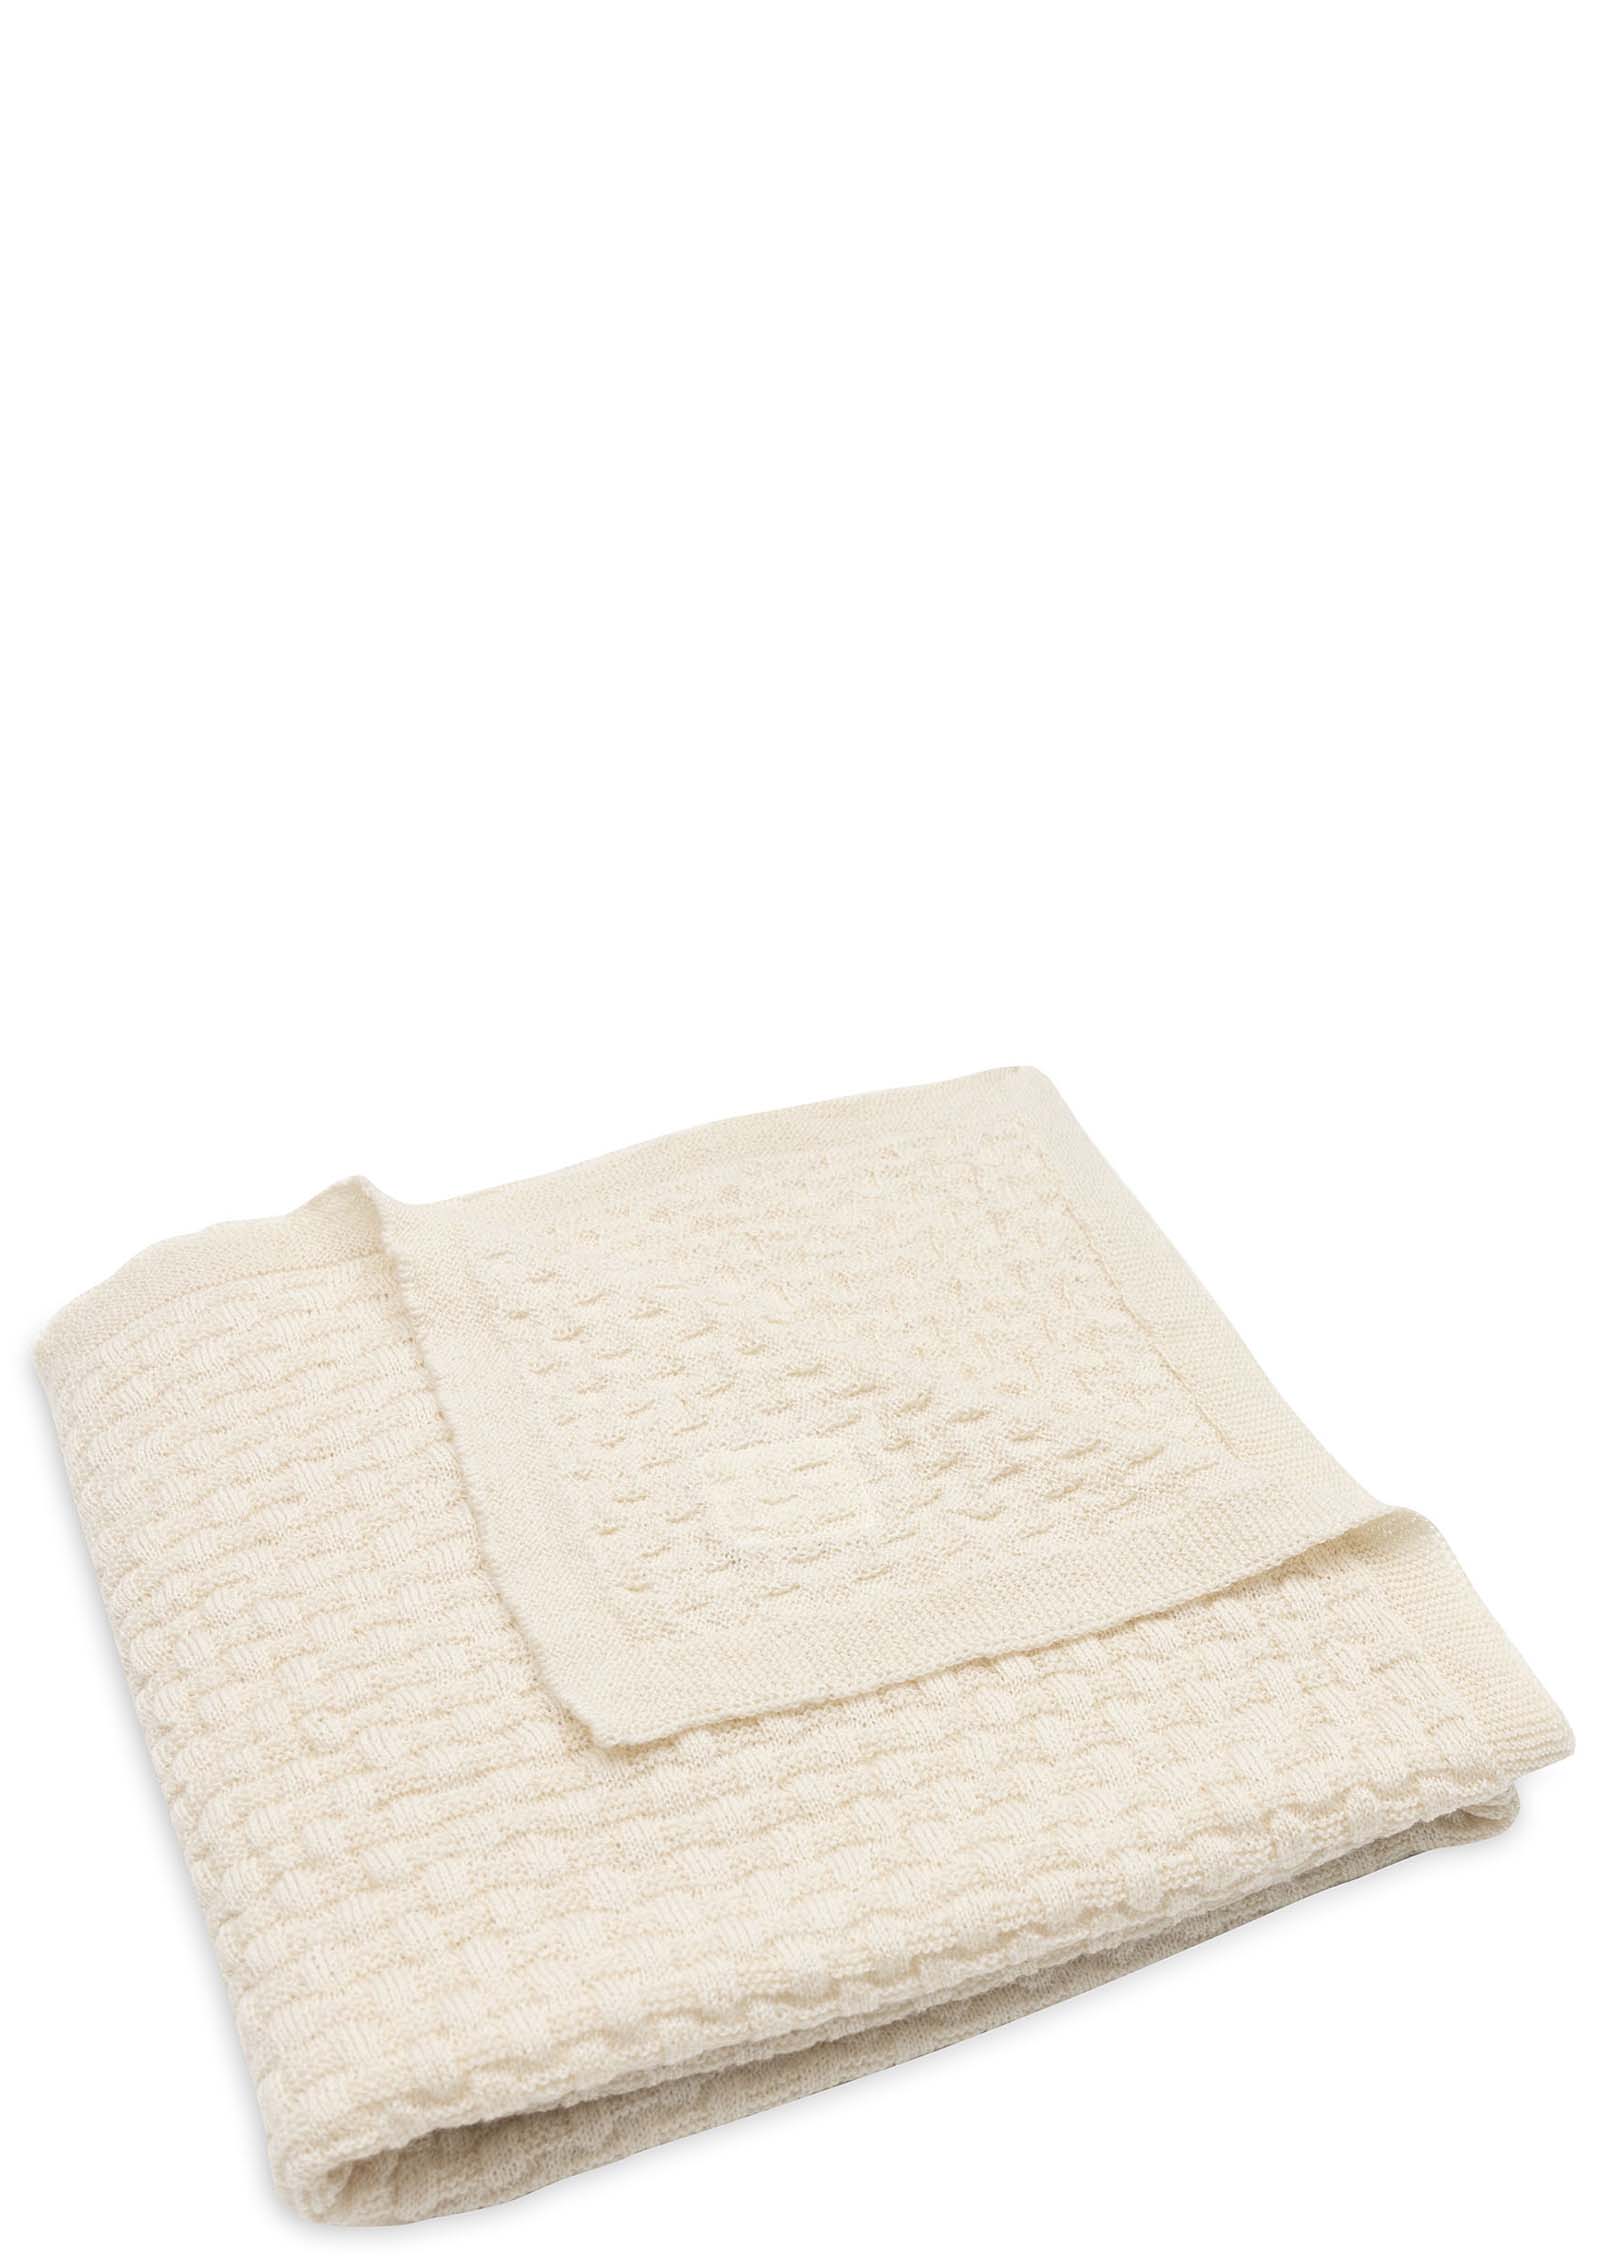 Jollein Merino Decke 'Weave knit' Oatmeal